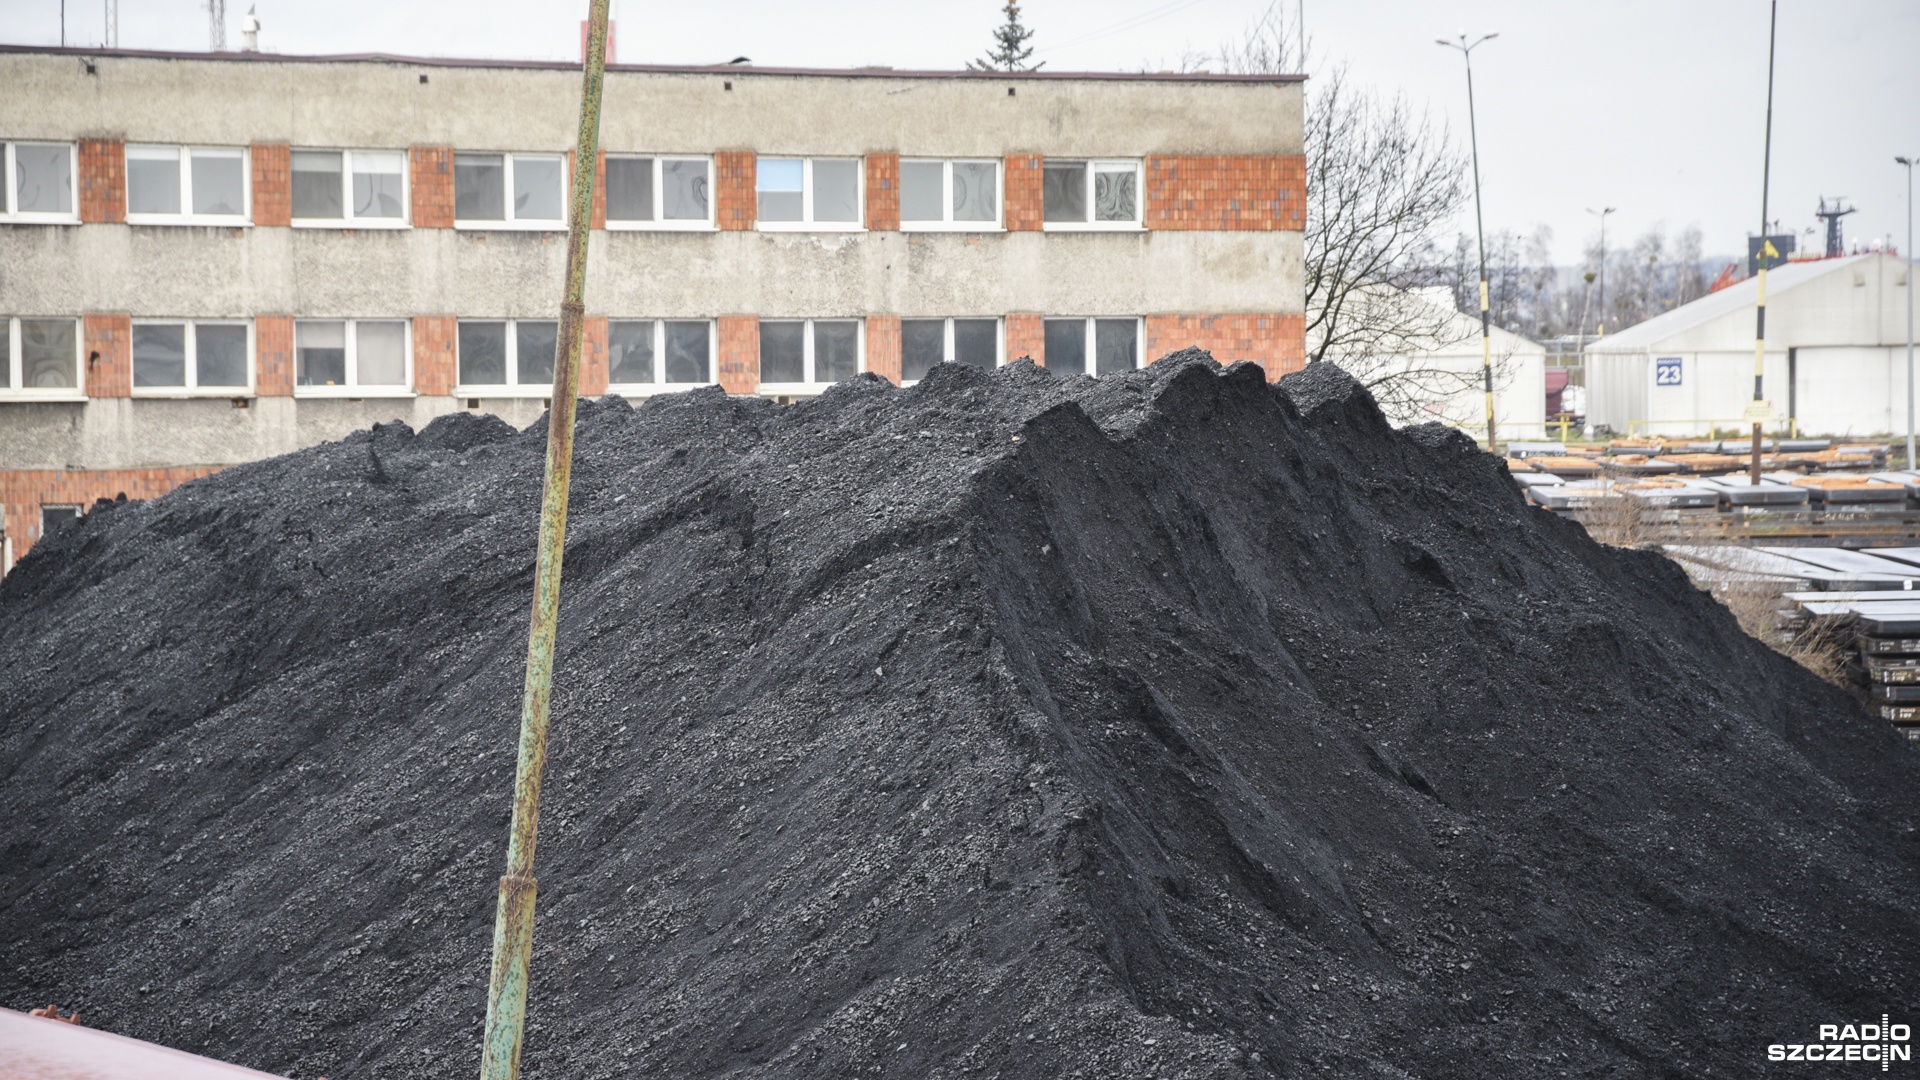 Przerobiliśmy lekcję z poprzedniego roku i jesteśmy przygotowani, by węgla nie zabrakło - powiedział wiceminister aktywów państwowych, Marek Wesoły.